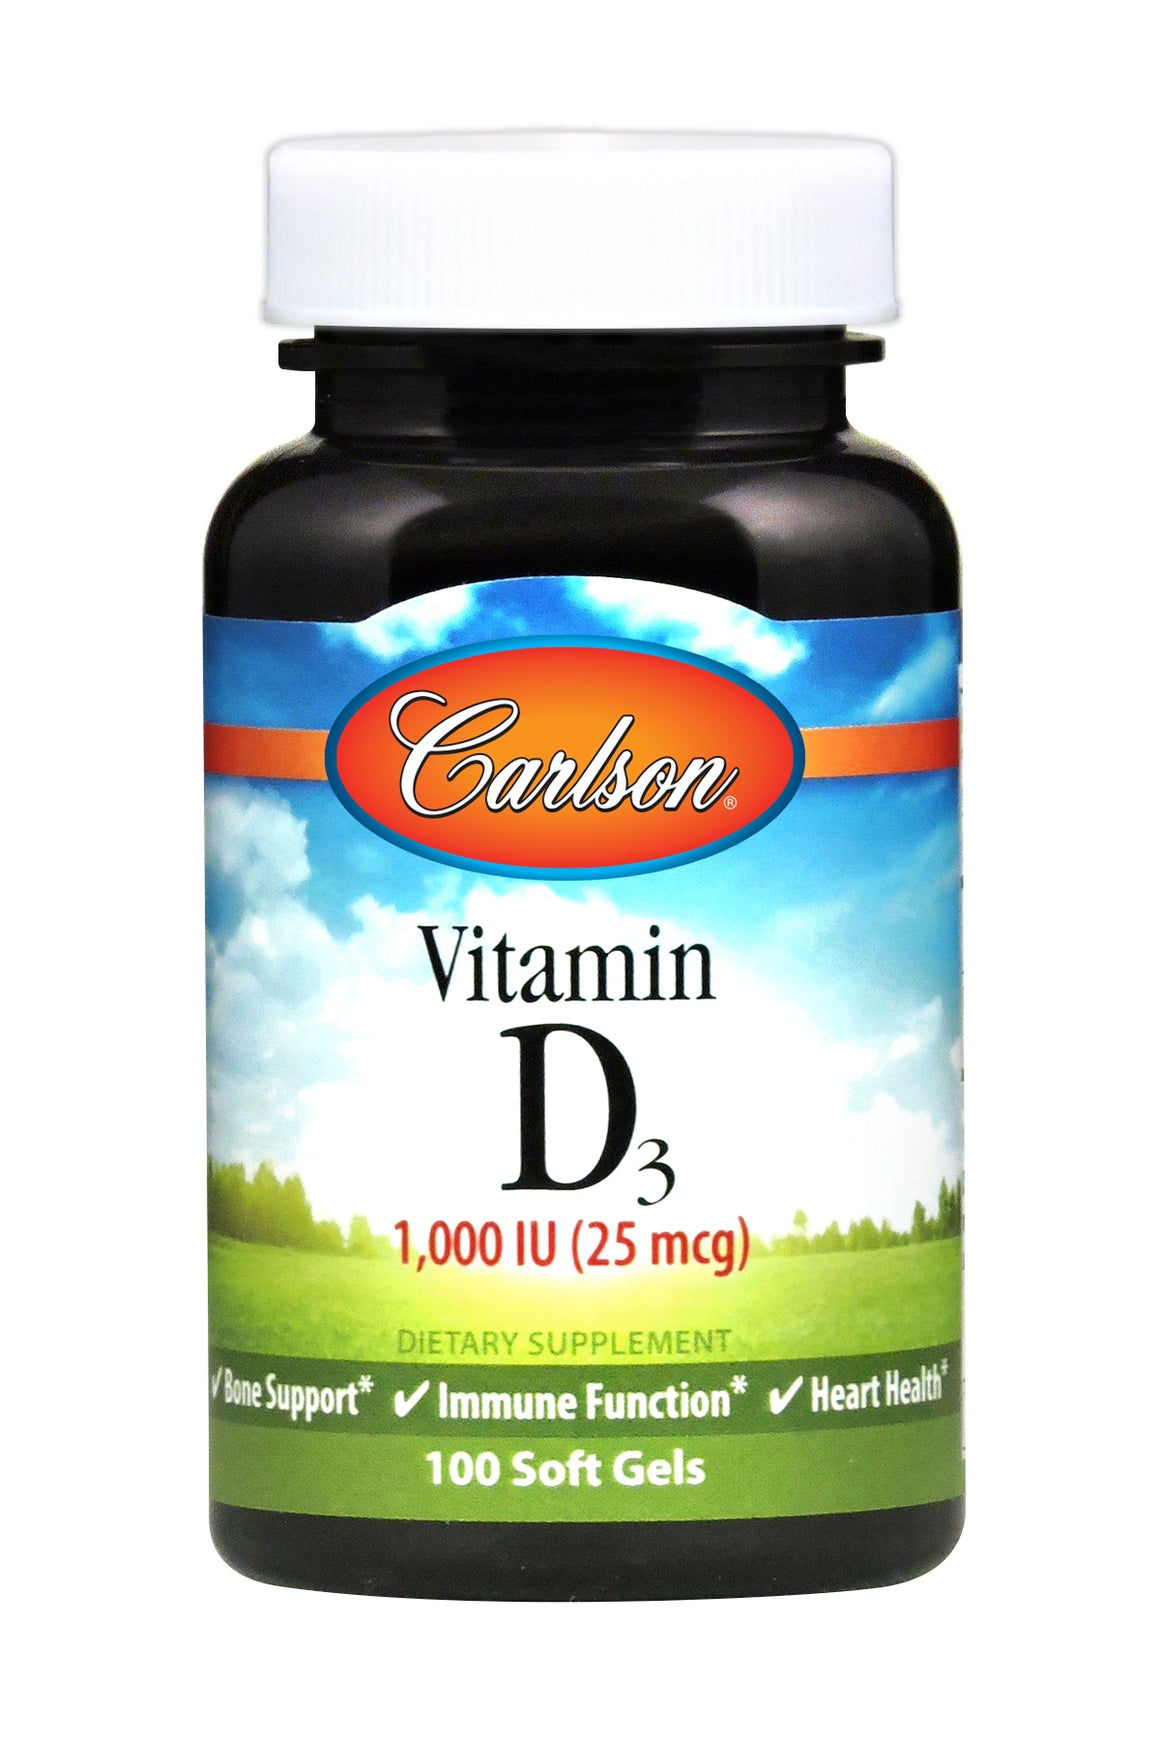 A bottle of Carlson Vitamin D3 1000 IU